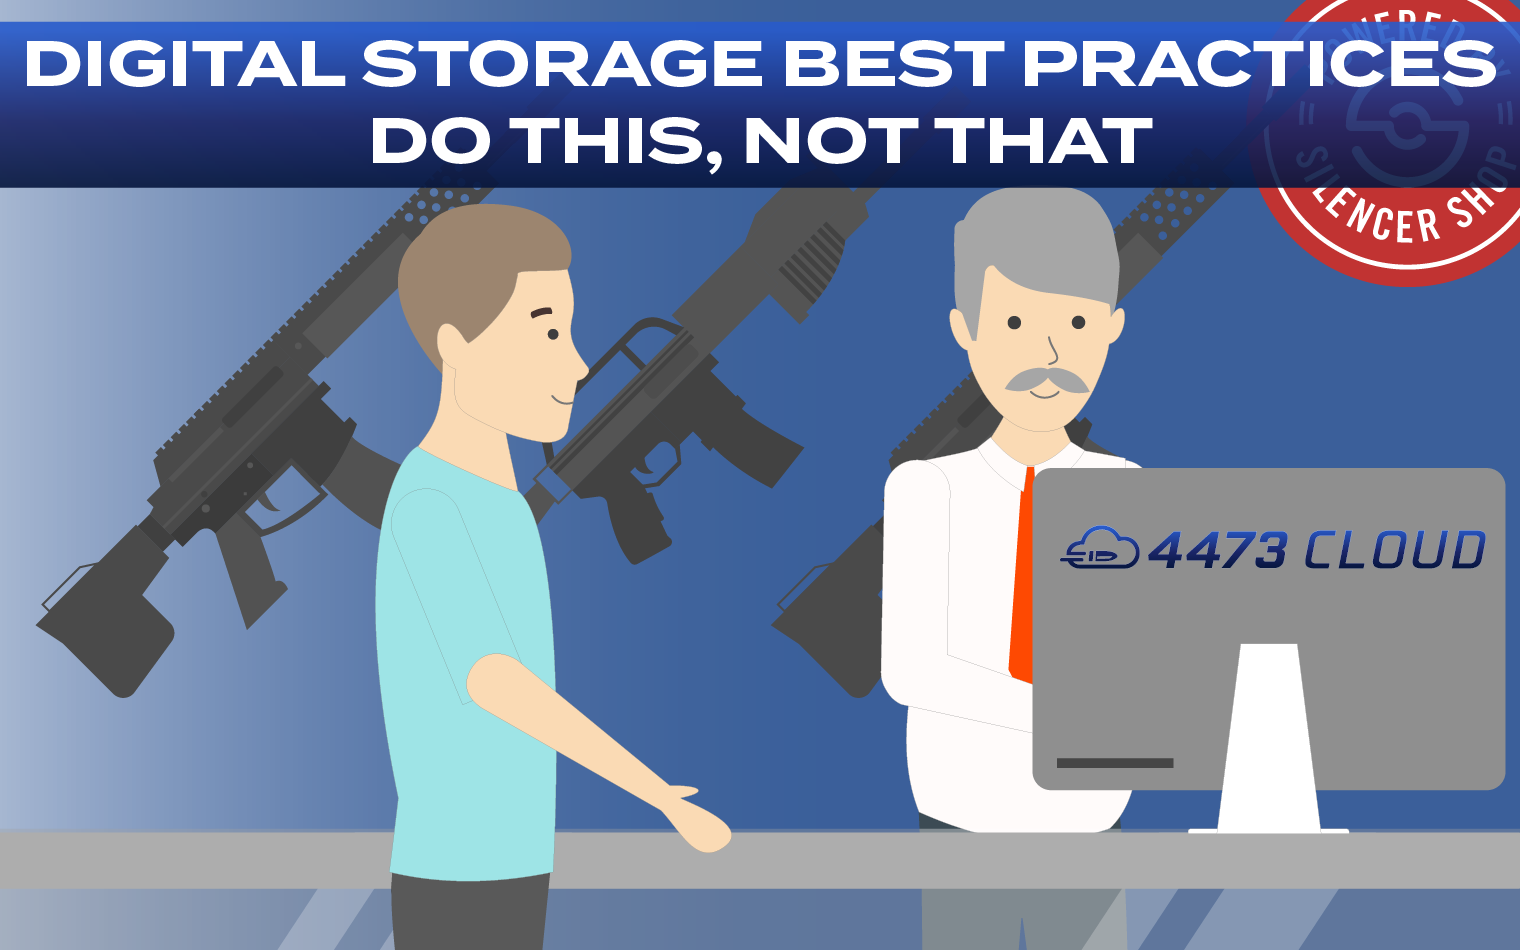 digital storage best practices, data storage best practices, cloud storage best practices